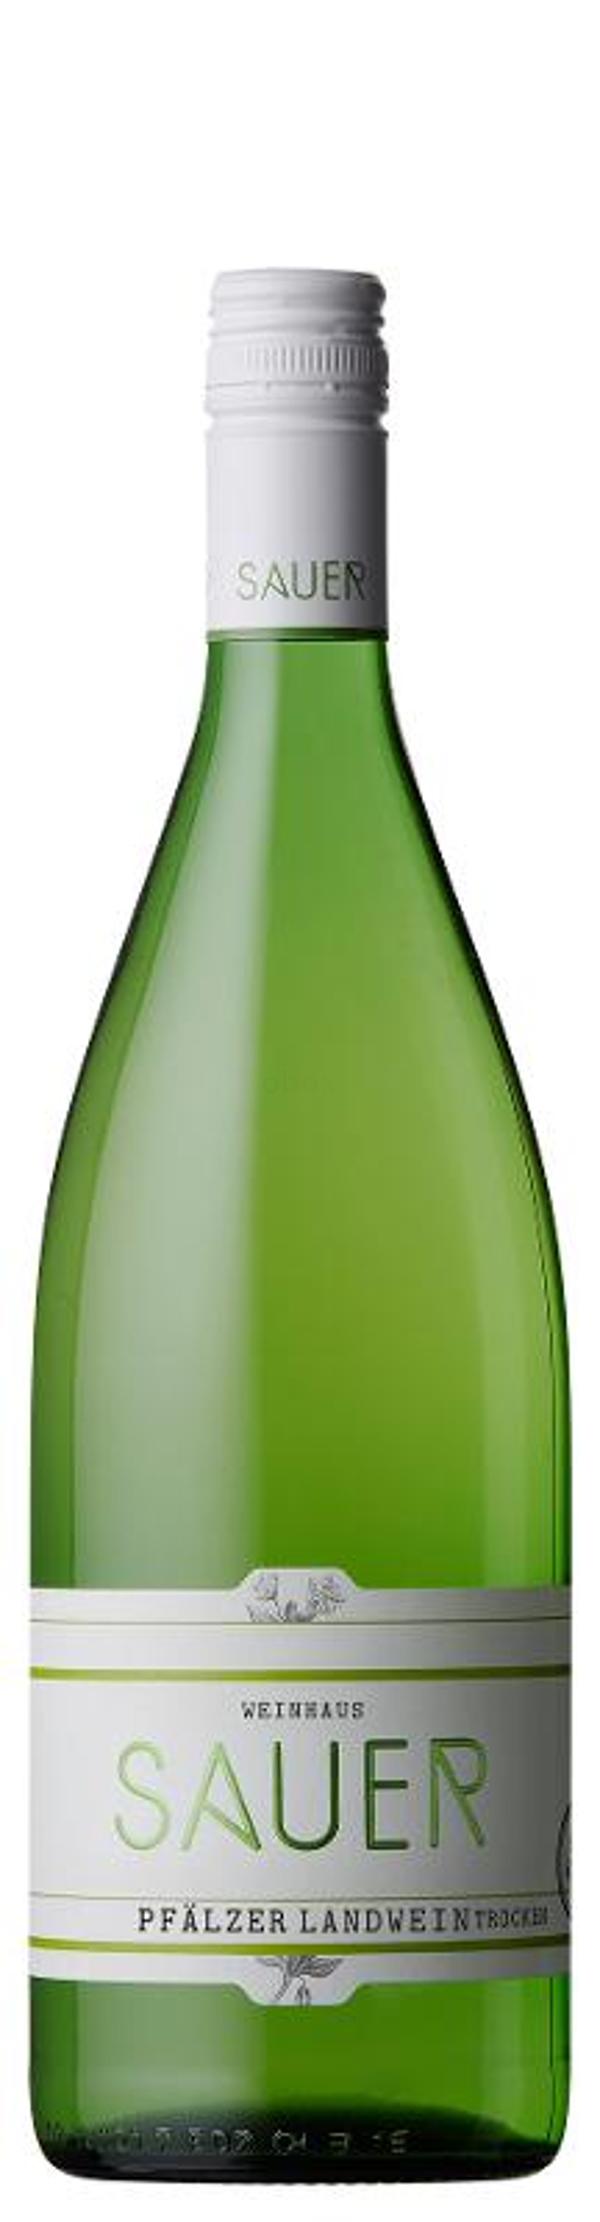 Produktfoto zu Pfälzer Landwein trocken weiß, Weingut Sauer, 1L